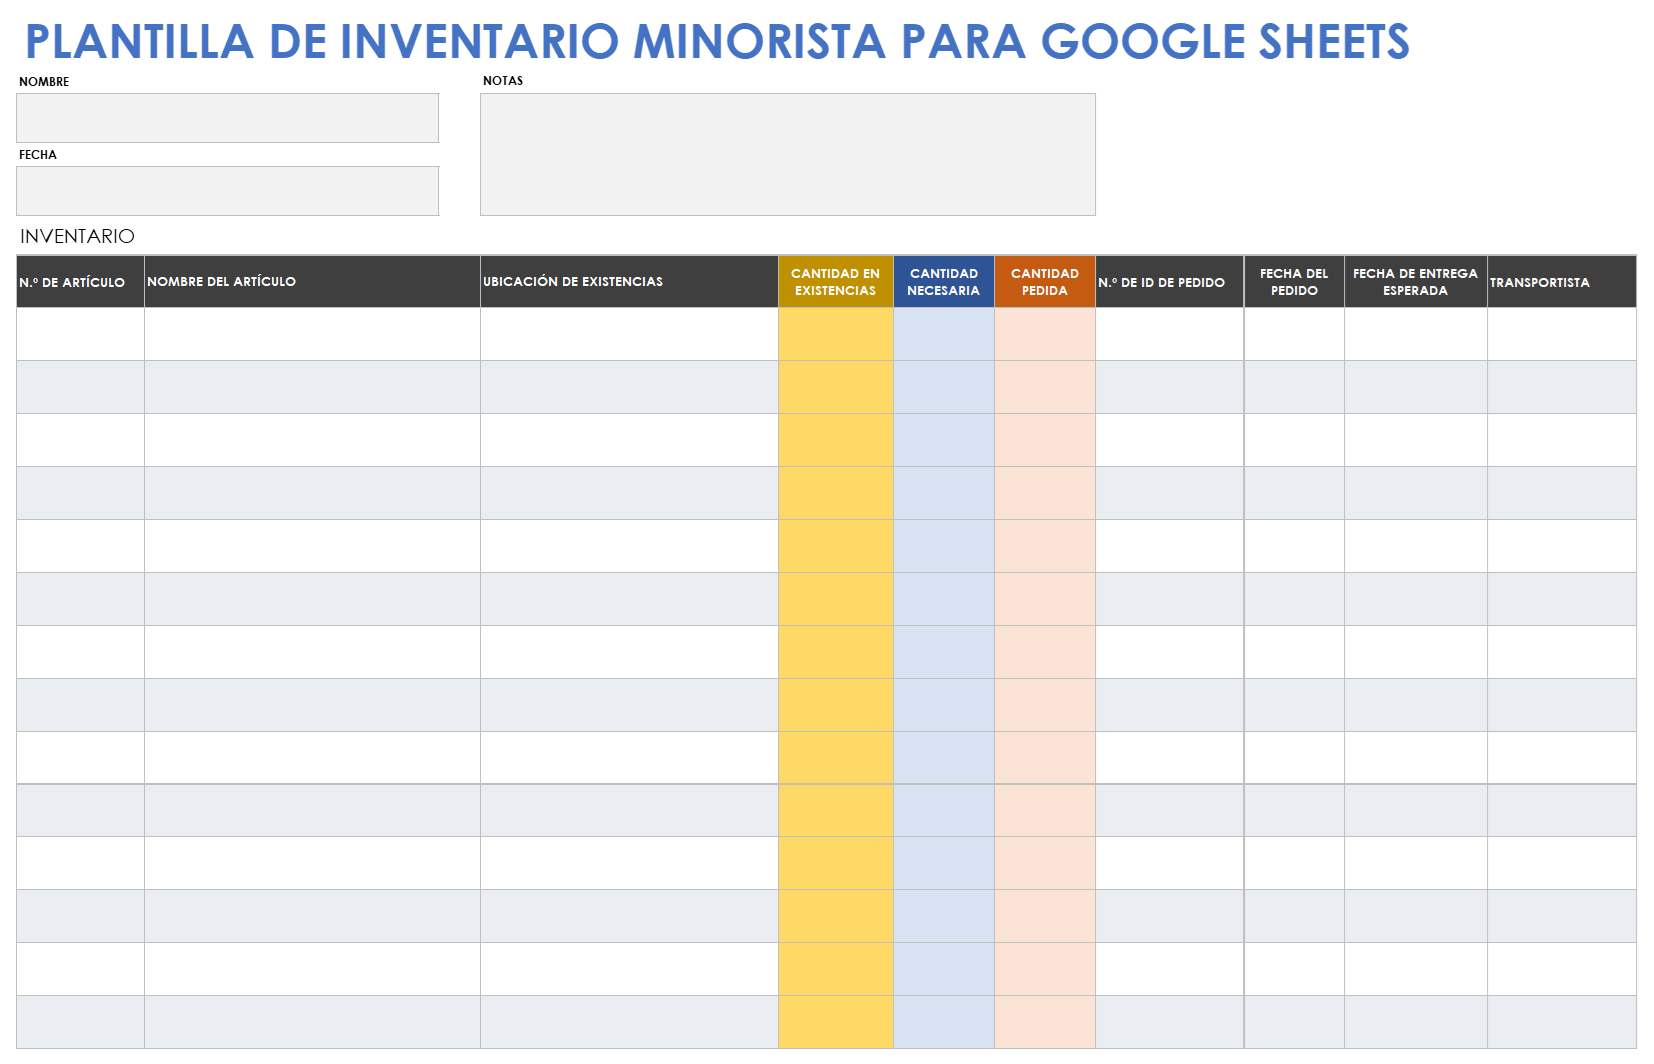  Plantilla de inventario minorista de Google Sheets